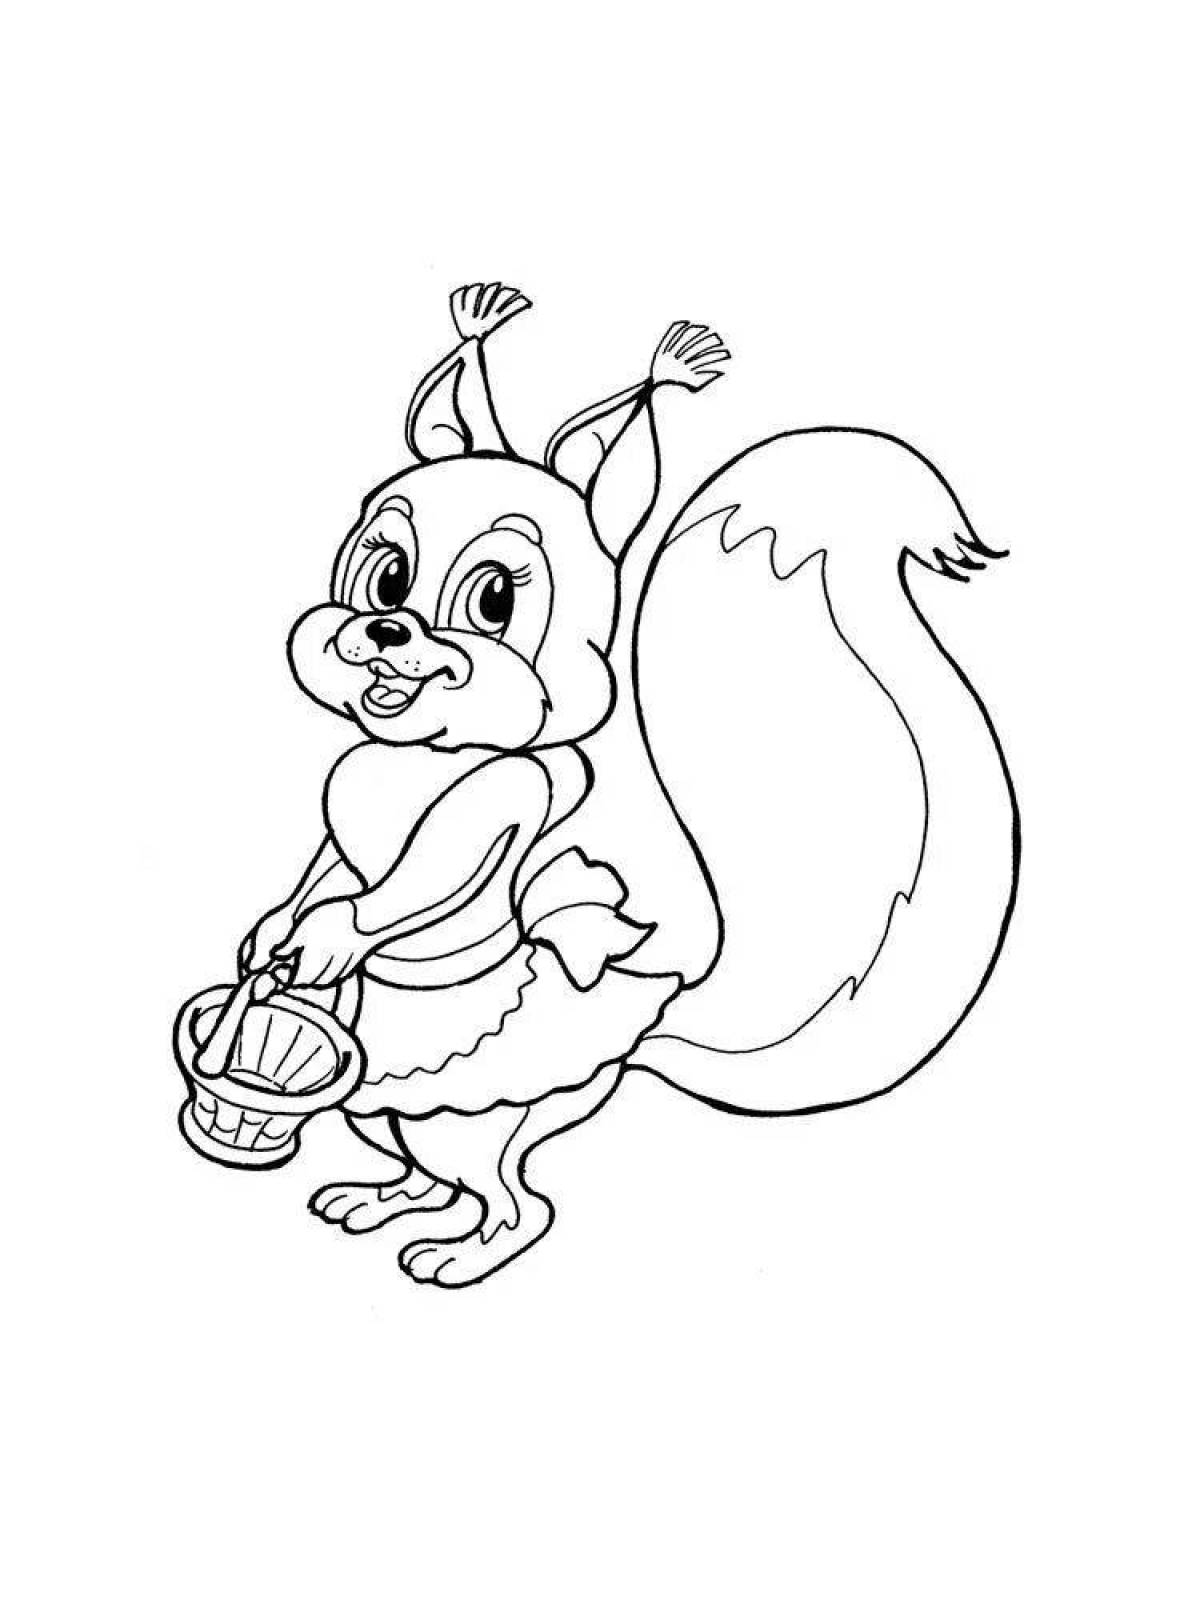 Happy squirrel coloring page